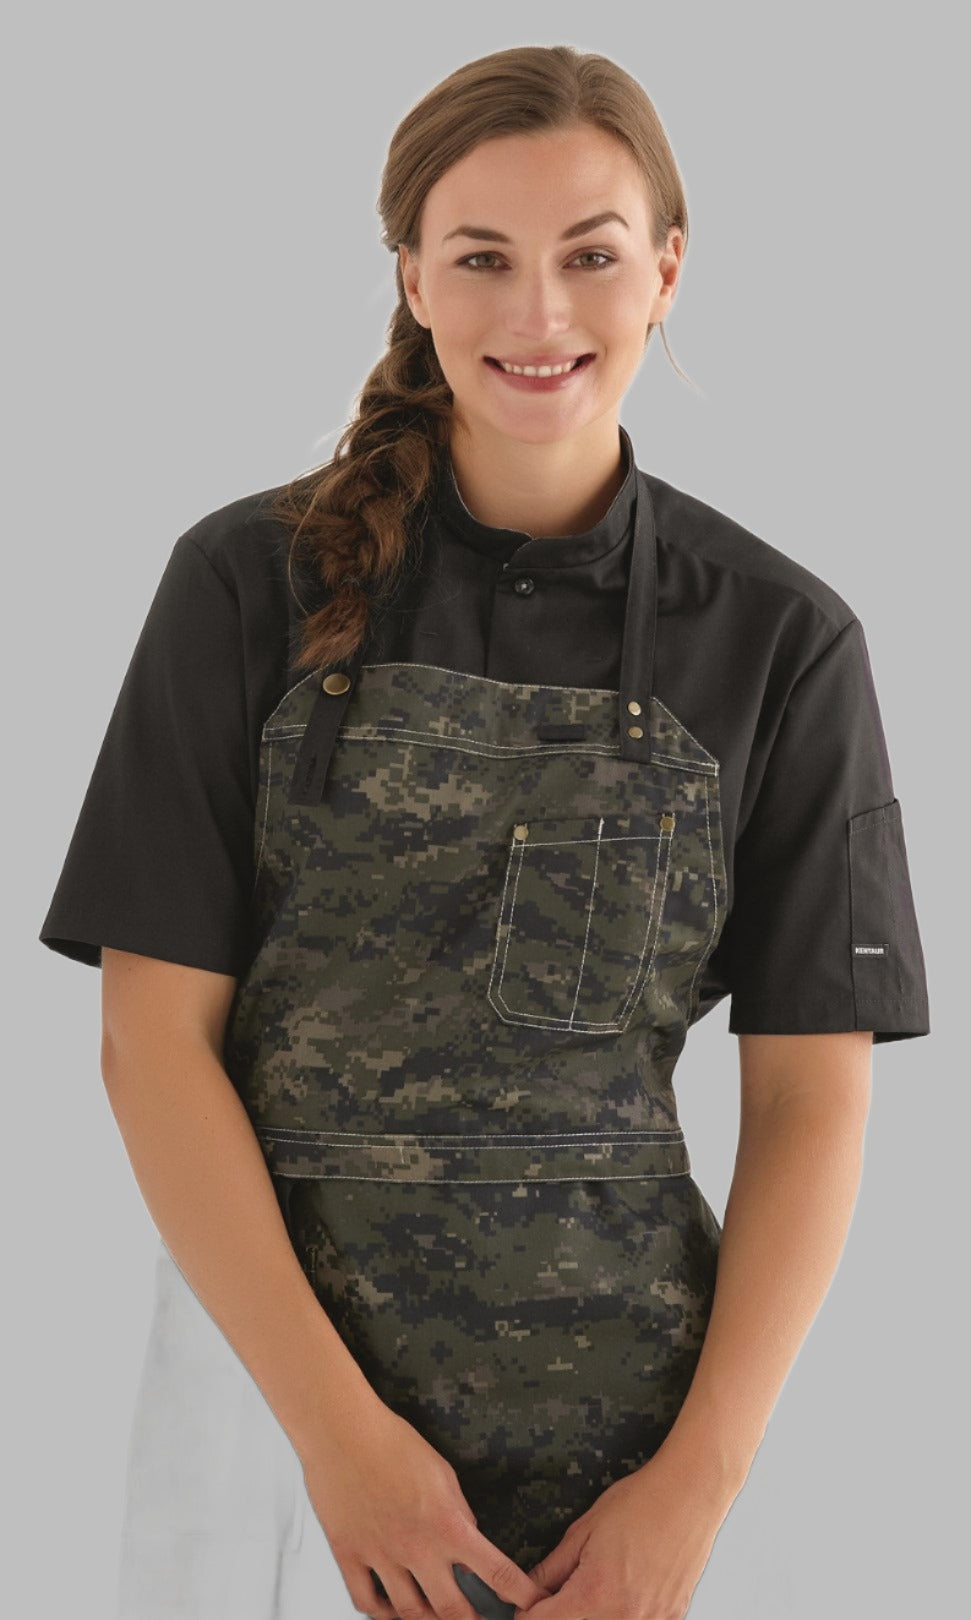 Black  Kentaur Chef Service Shirt Short Sleeve